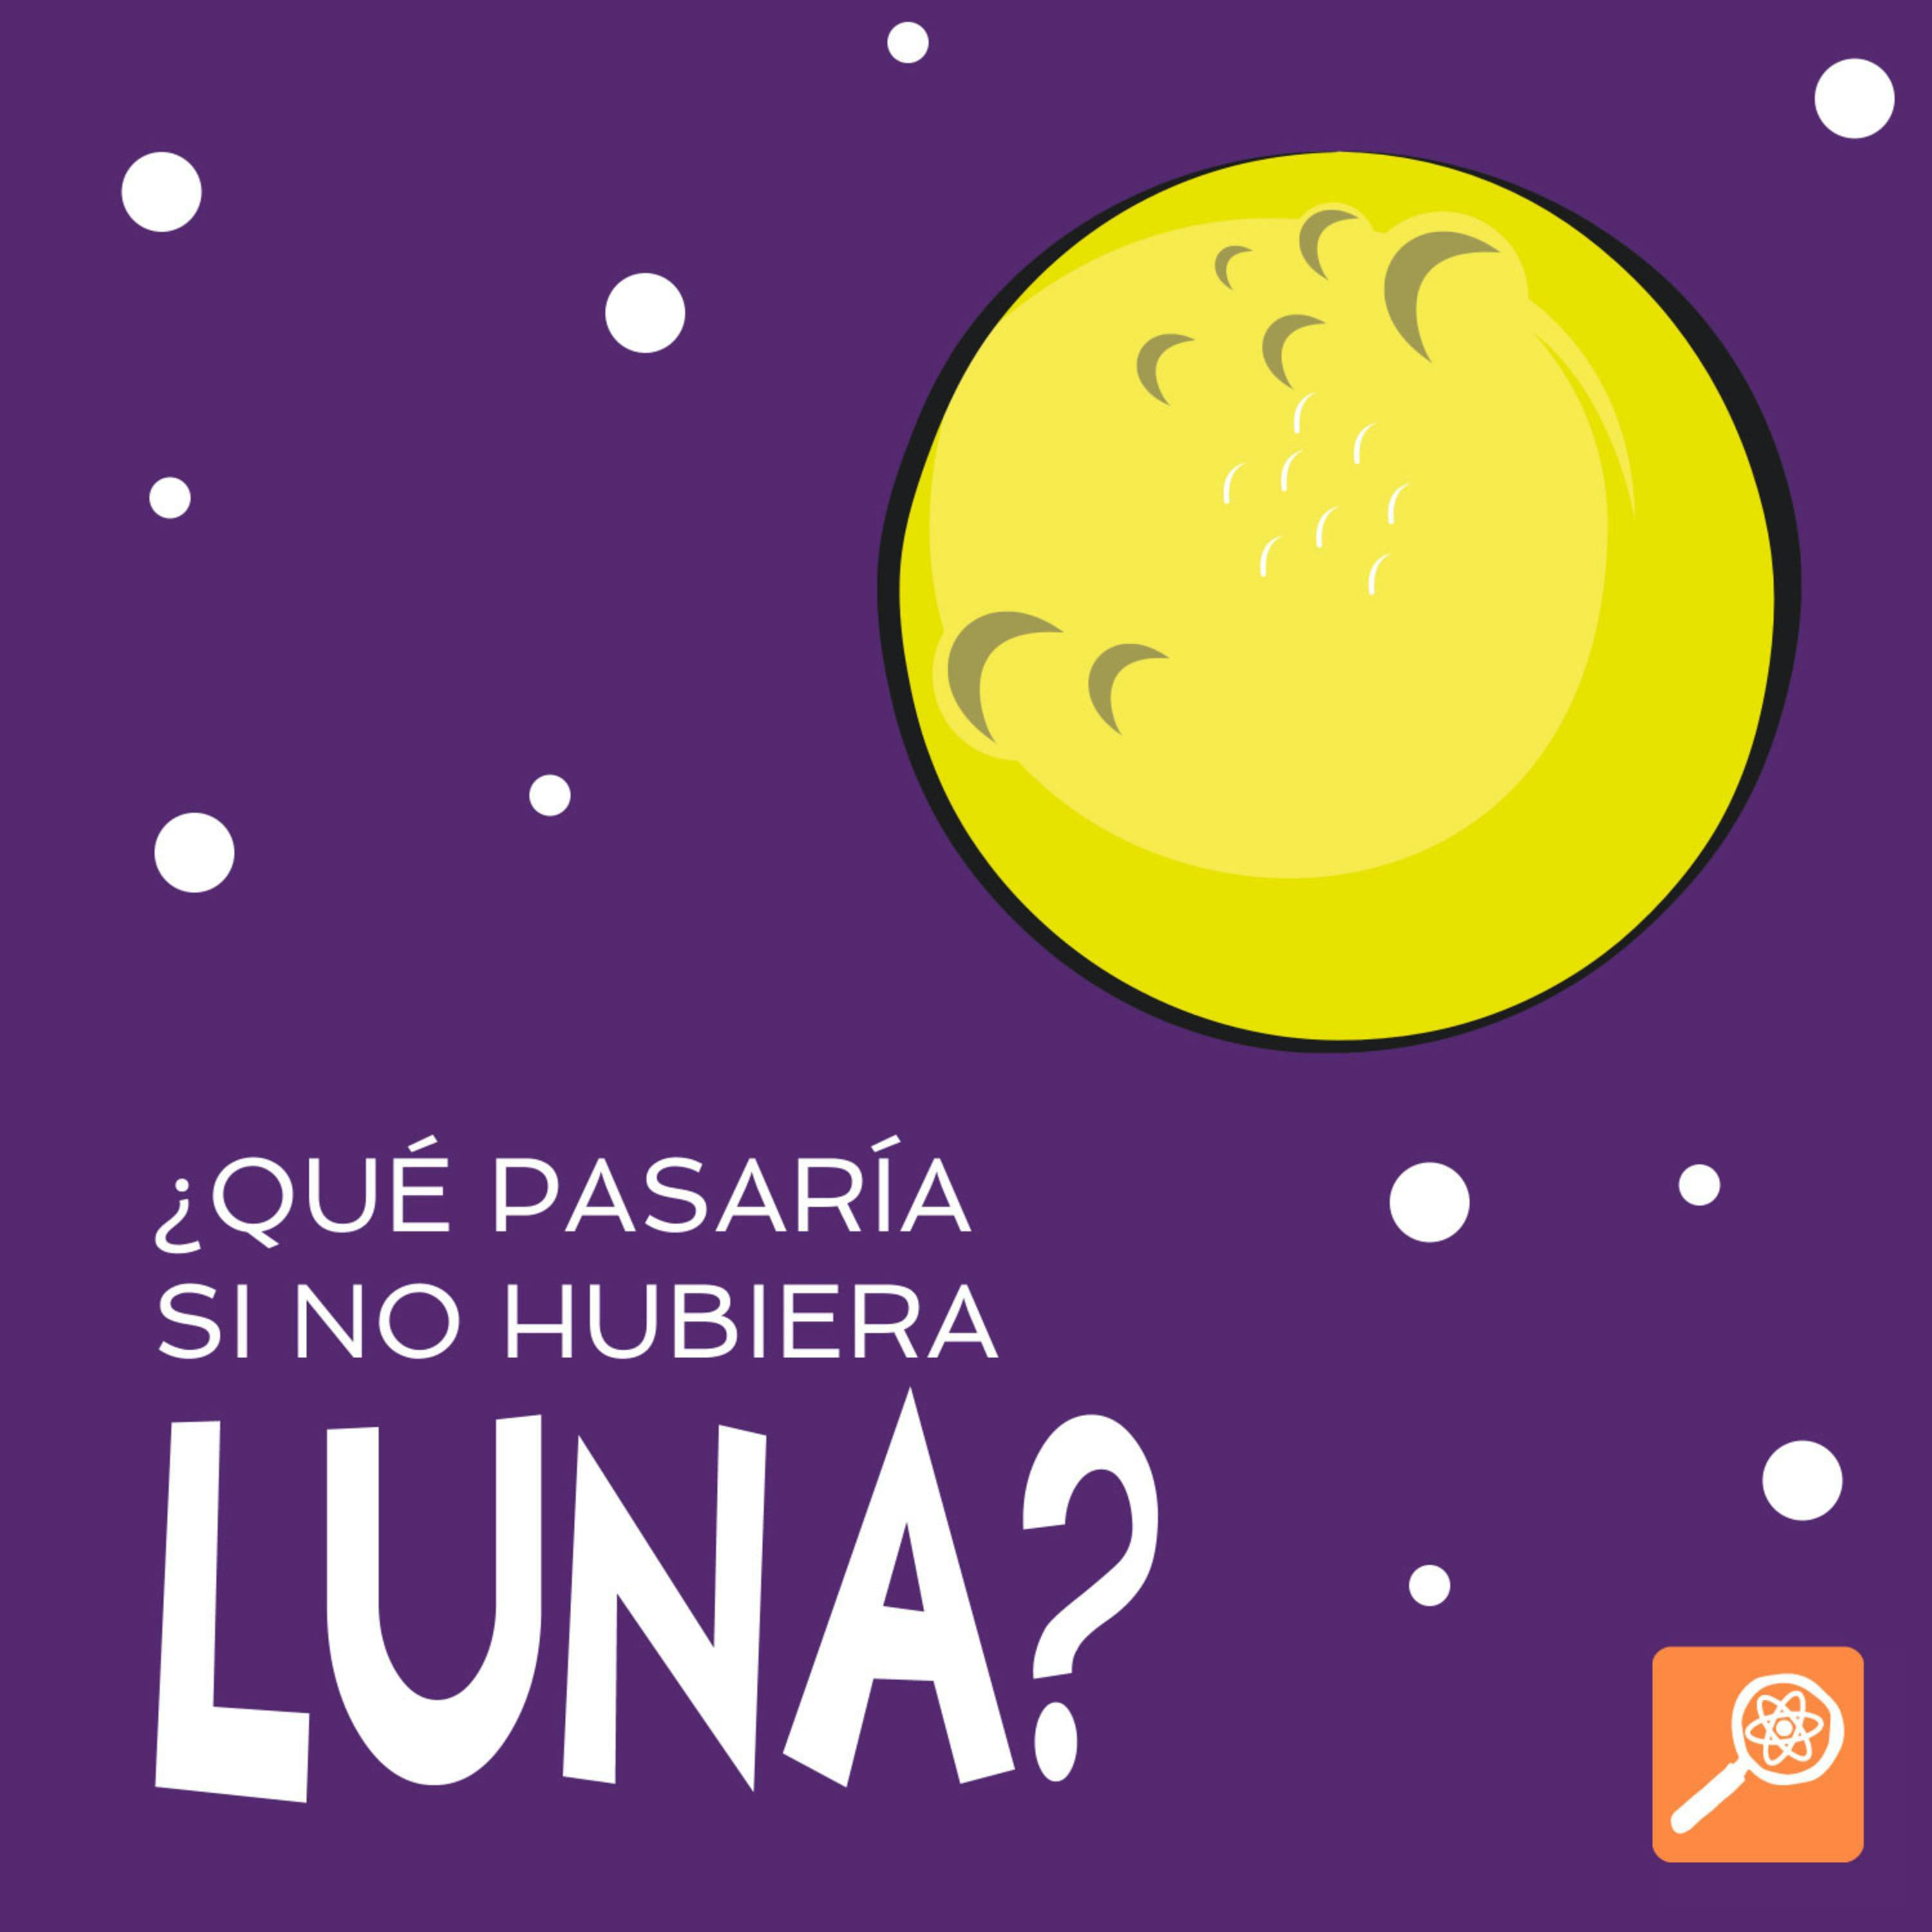 ¿Qué Pasaría si no hubiera Luna?